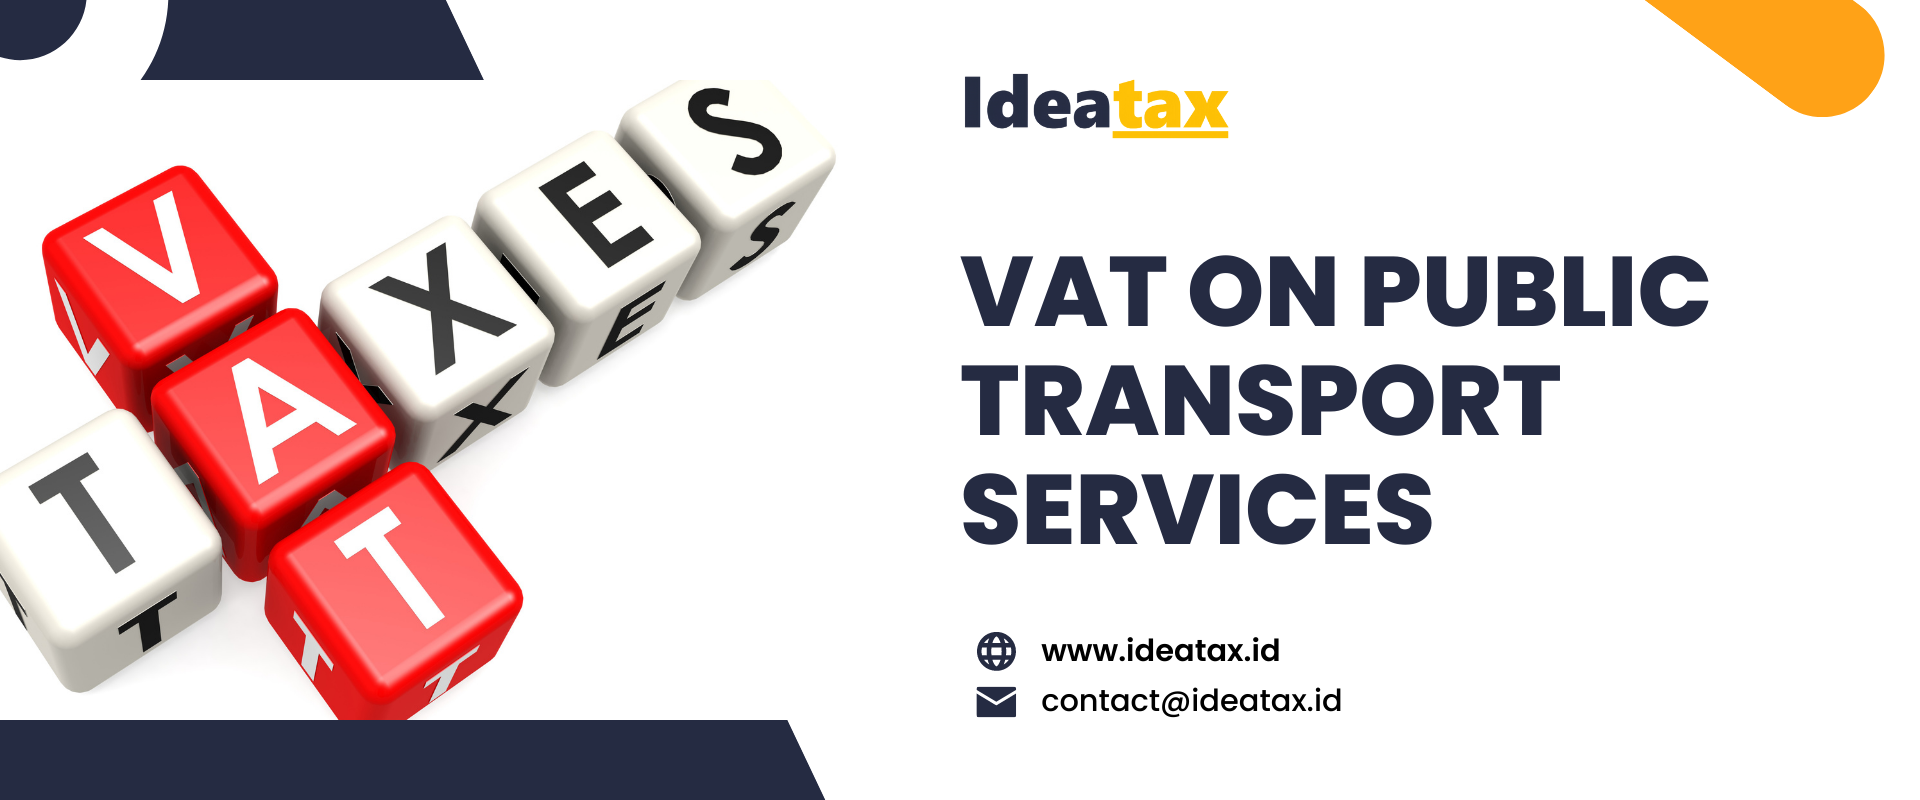 VAT on Public Transport Services